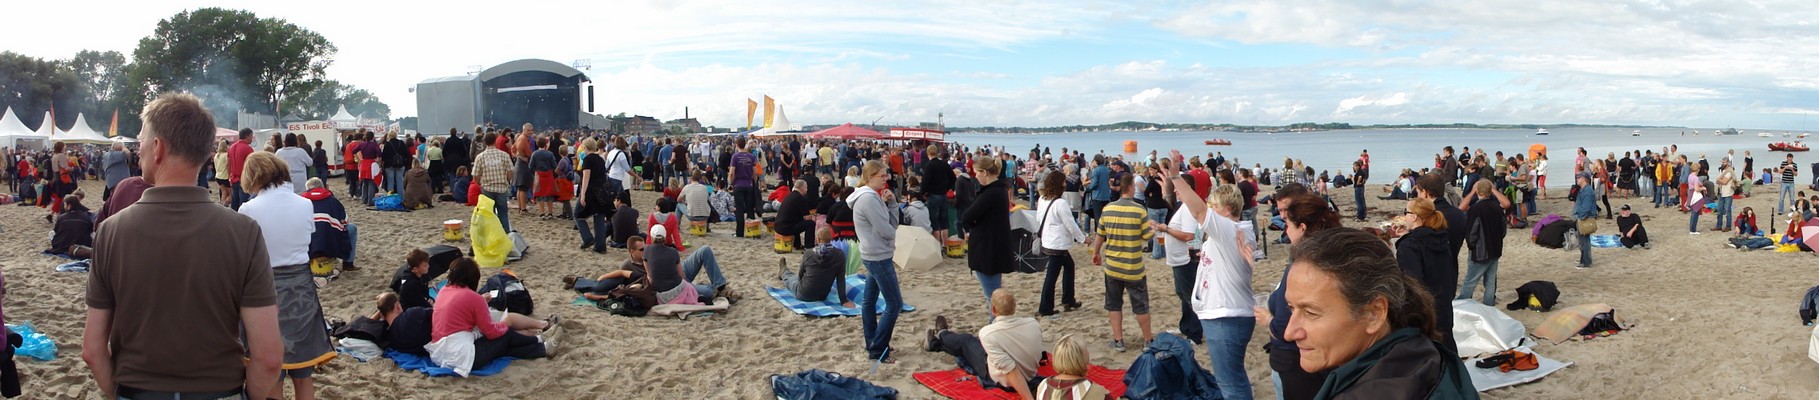 Eckernfrde Strandfest